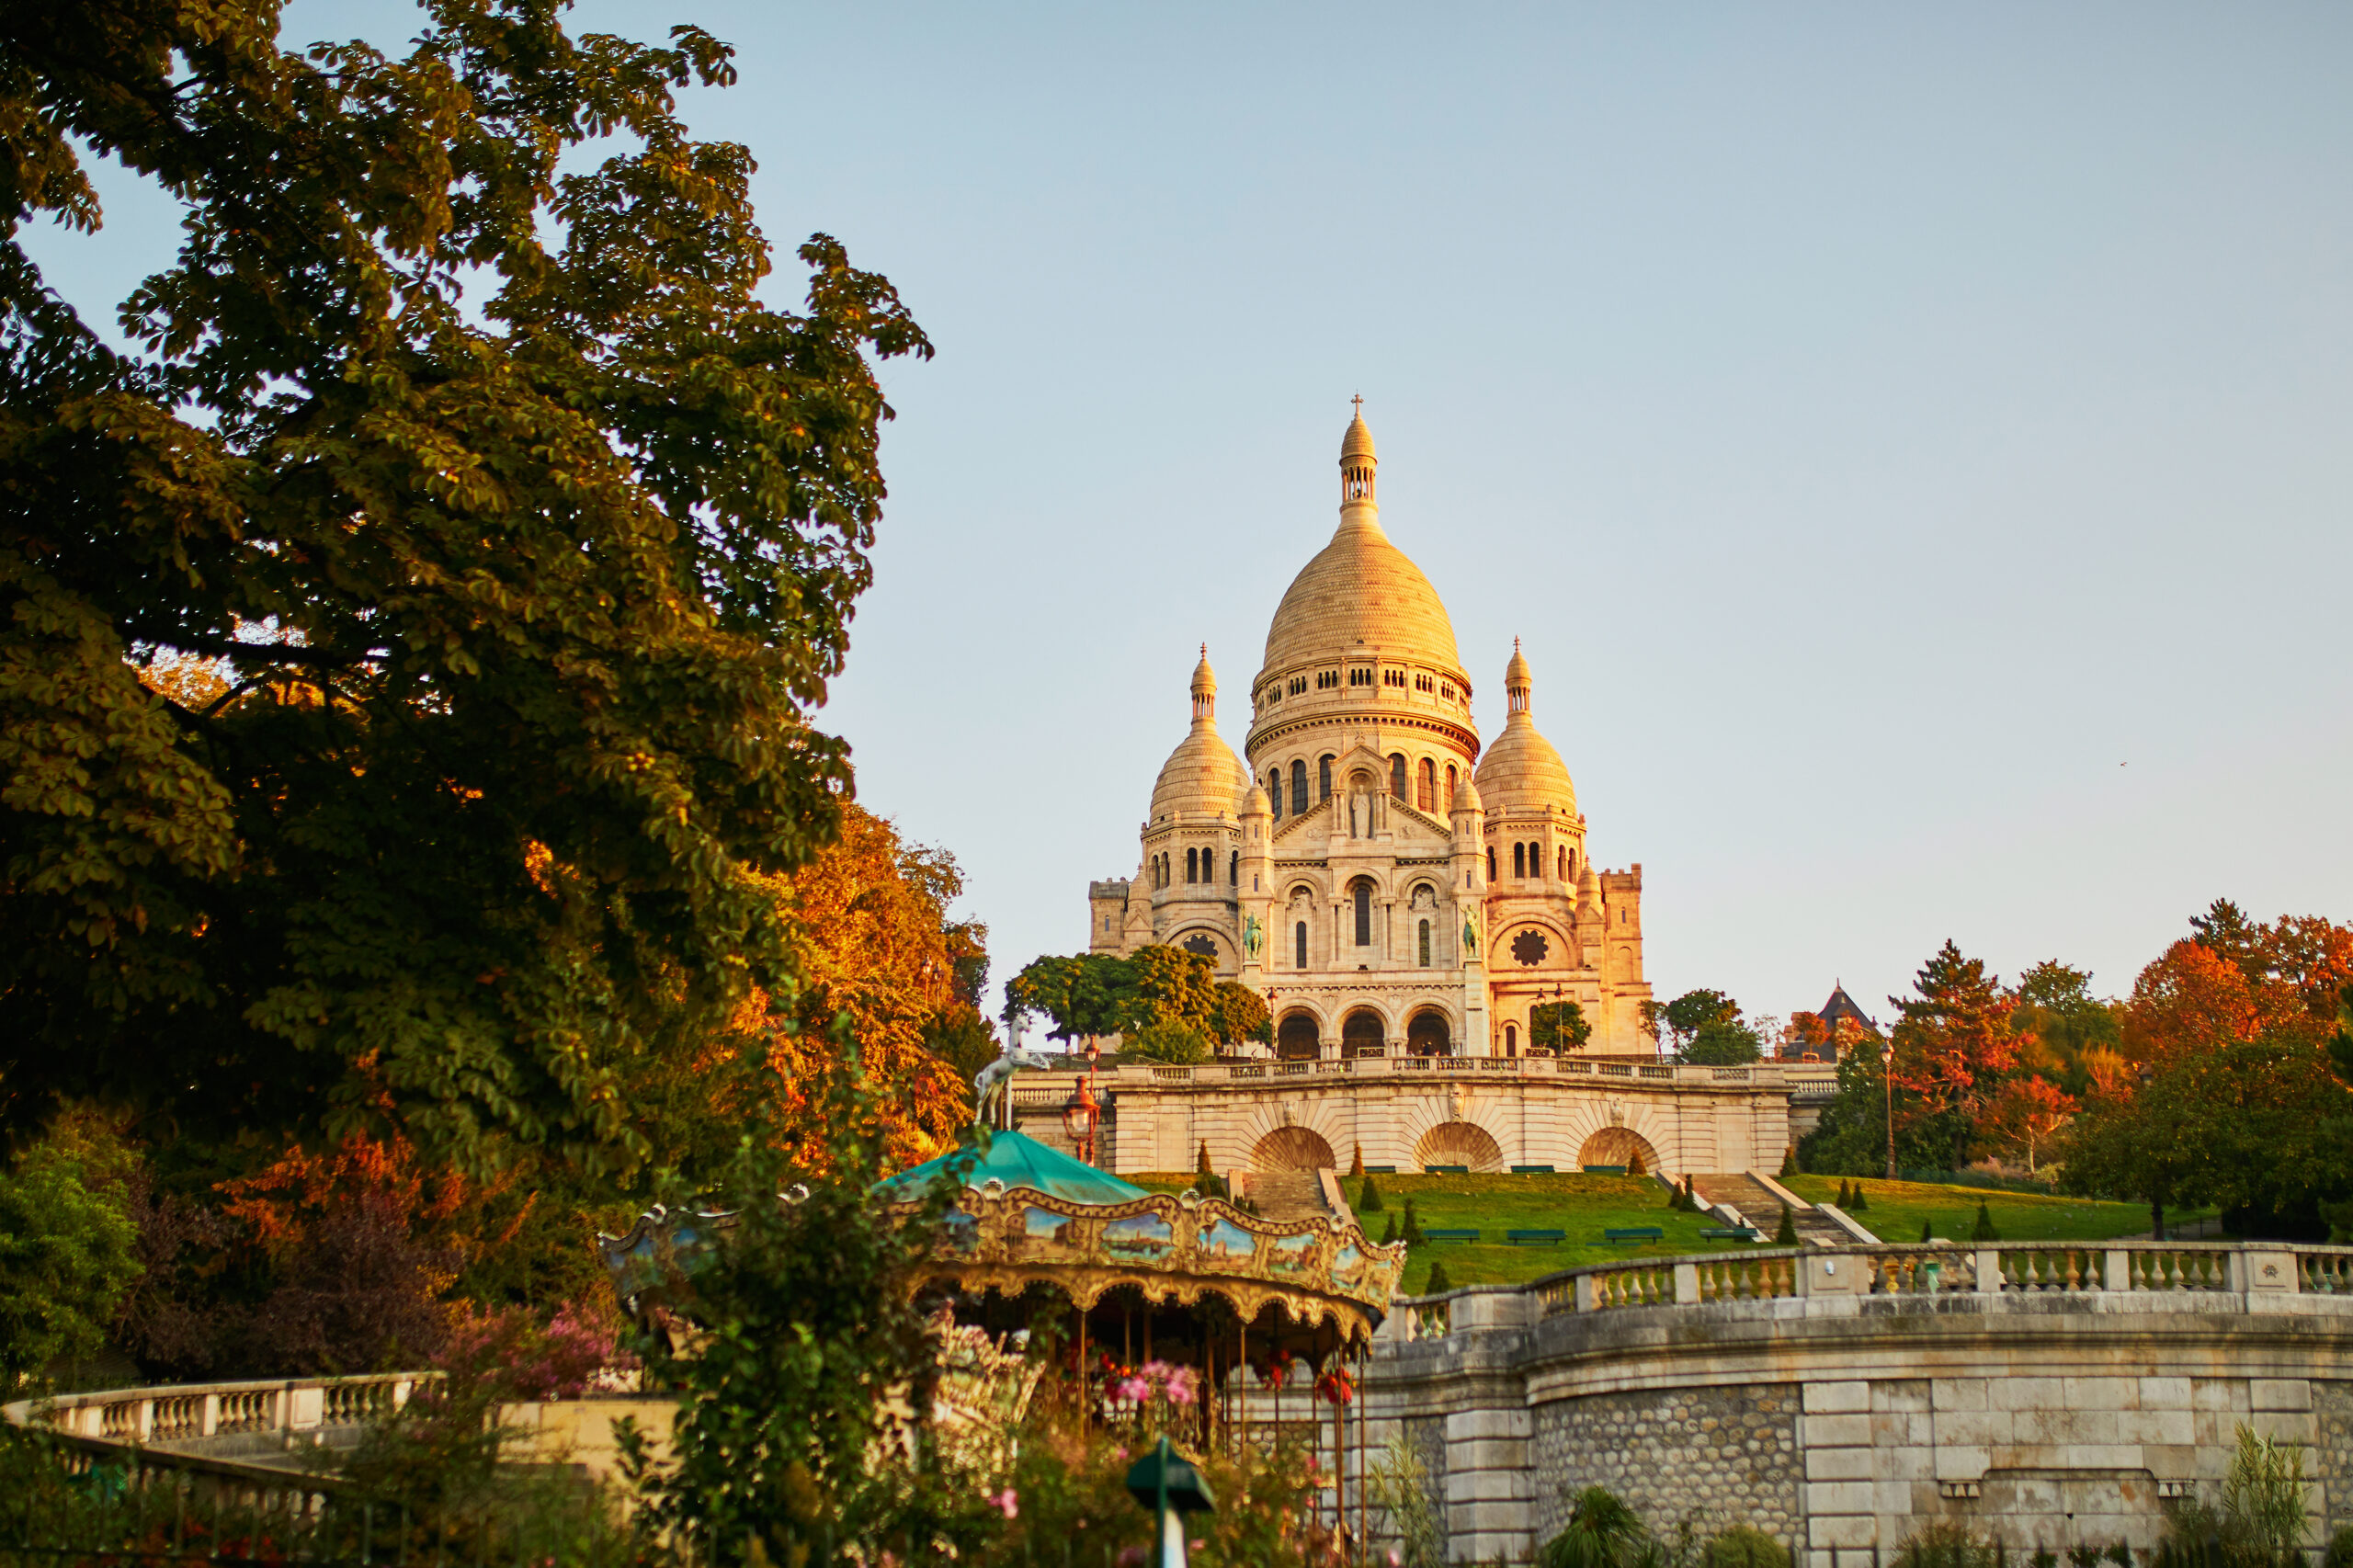 パリ市議会 サクレ・クール寺院を歴史的建造物に登録 | FRANCE 365